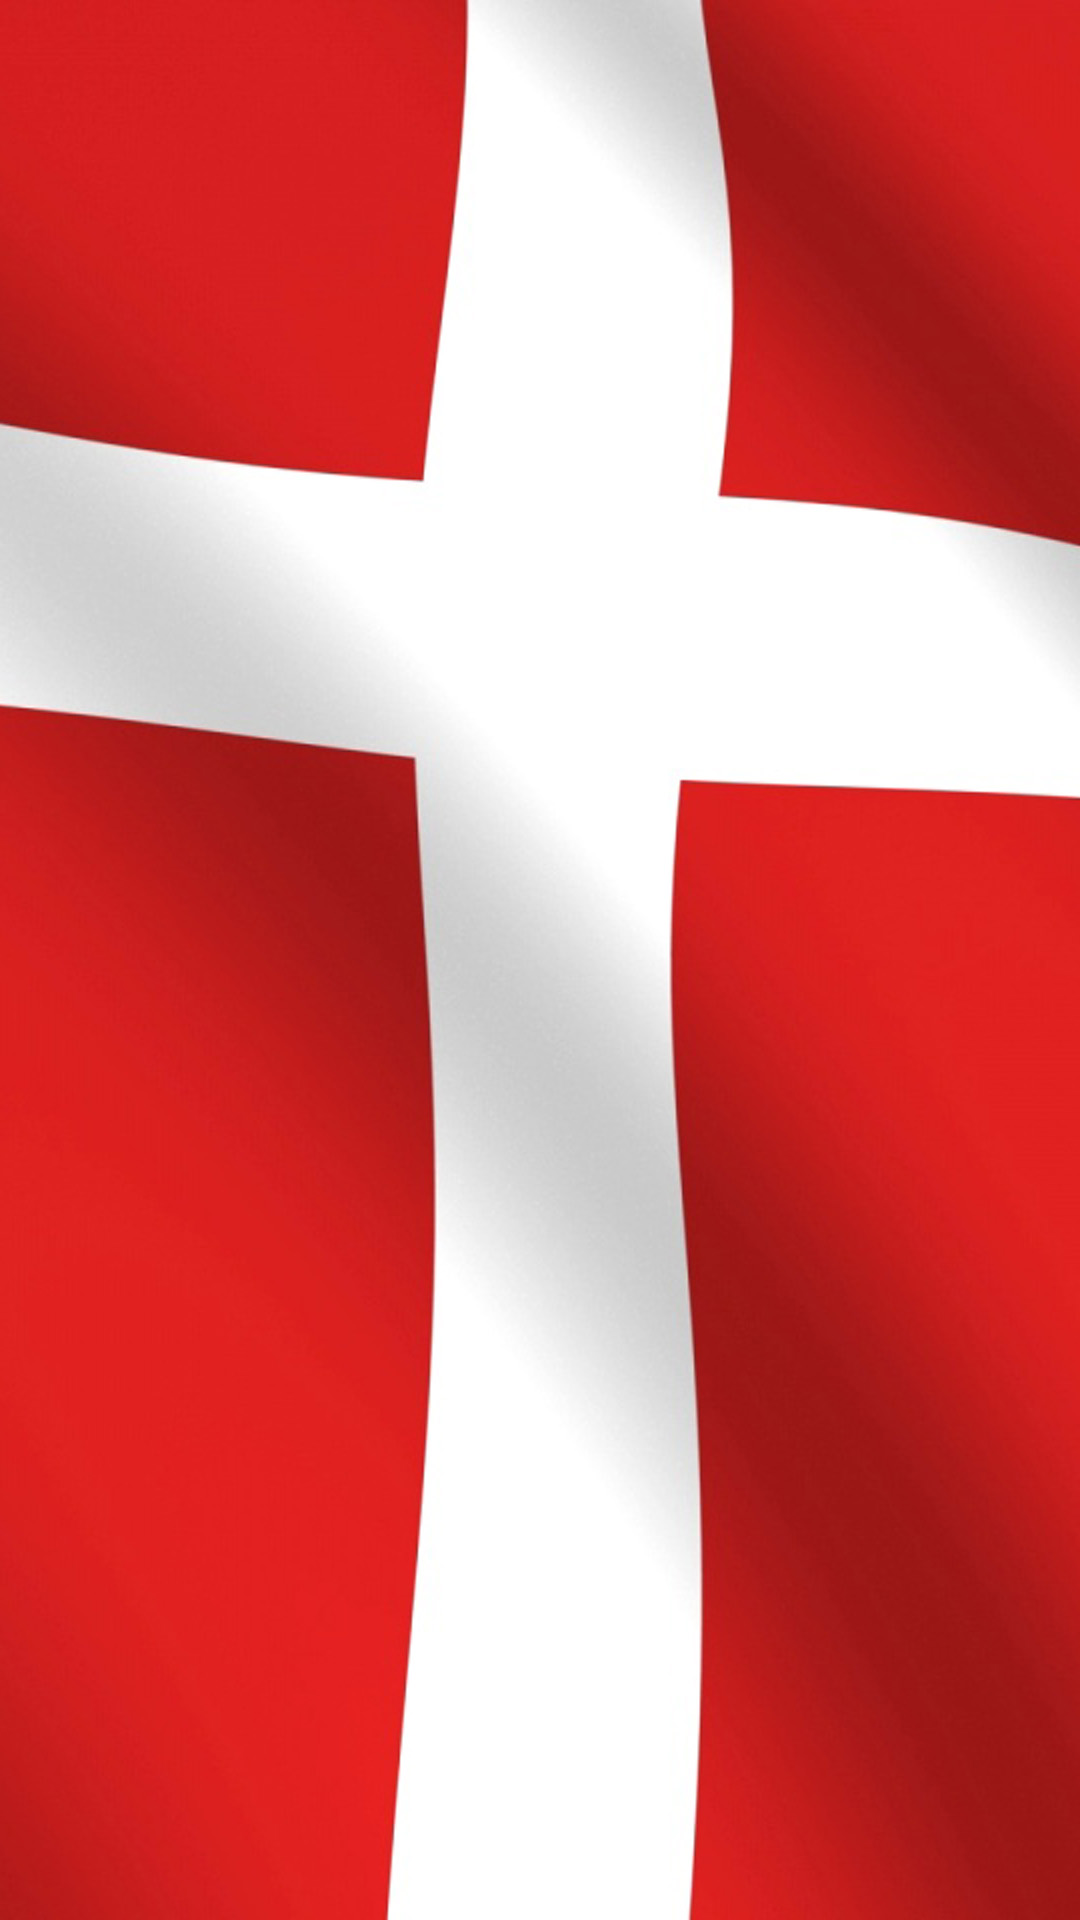 Denmark flag HD Wallpaper iPhone 6 plus   wallpapersmobilenet